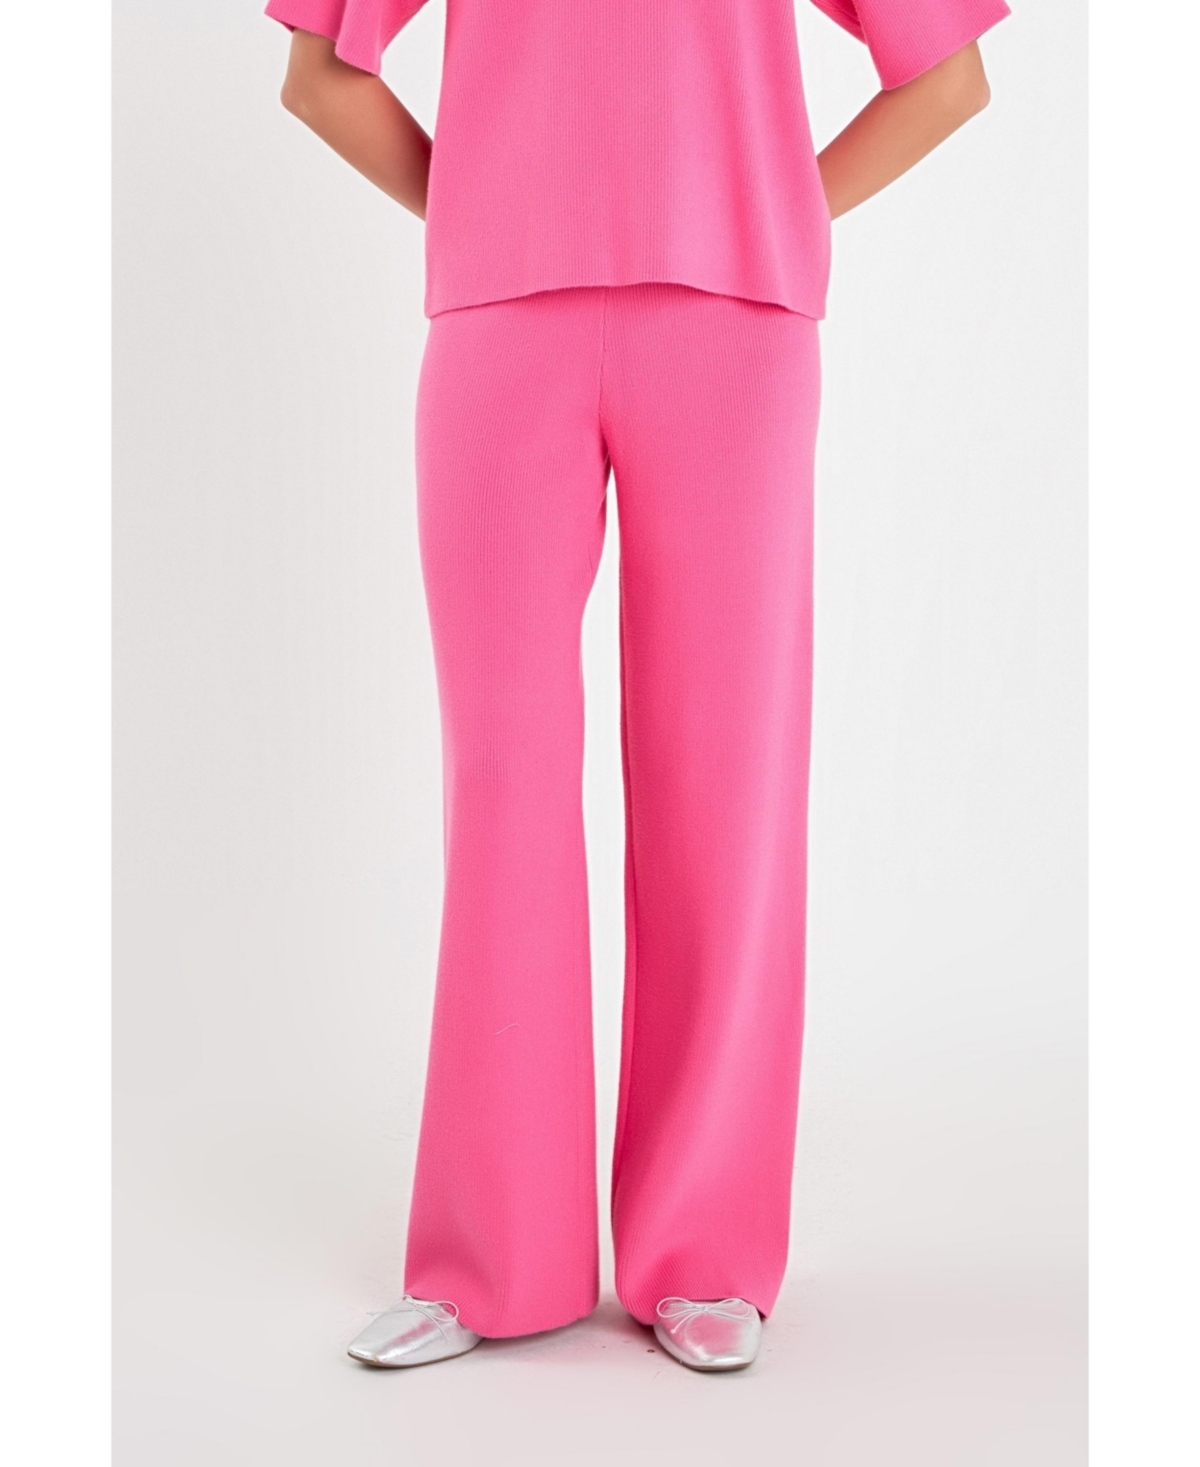 Women's Knit Pants - Pink